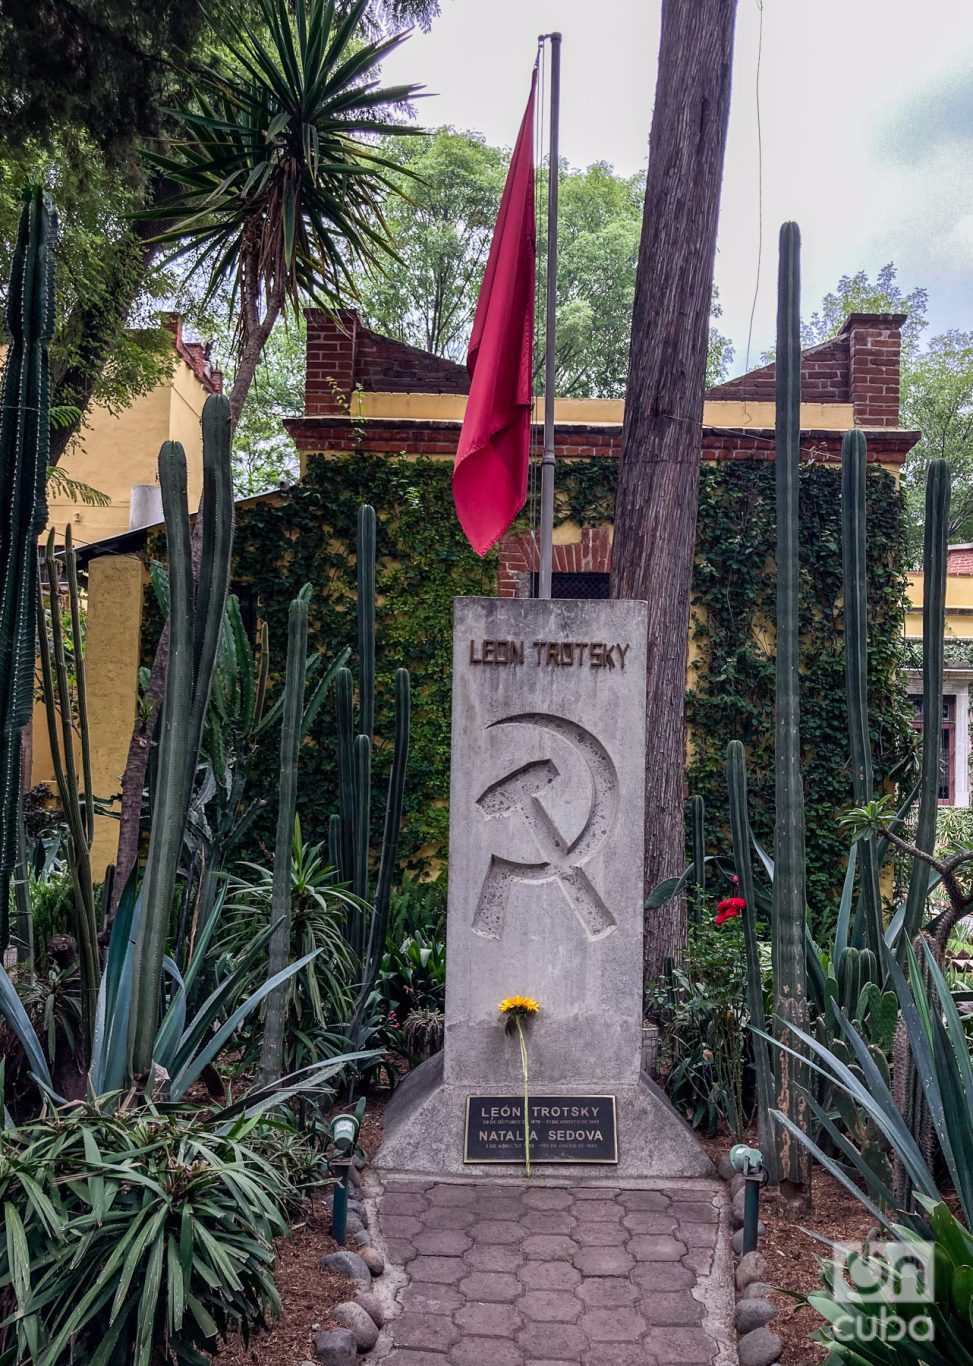 Tumba donde reposan las cenizas de León Trotski y su esposa. Foto: Kaloian.